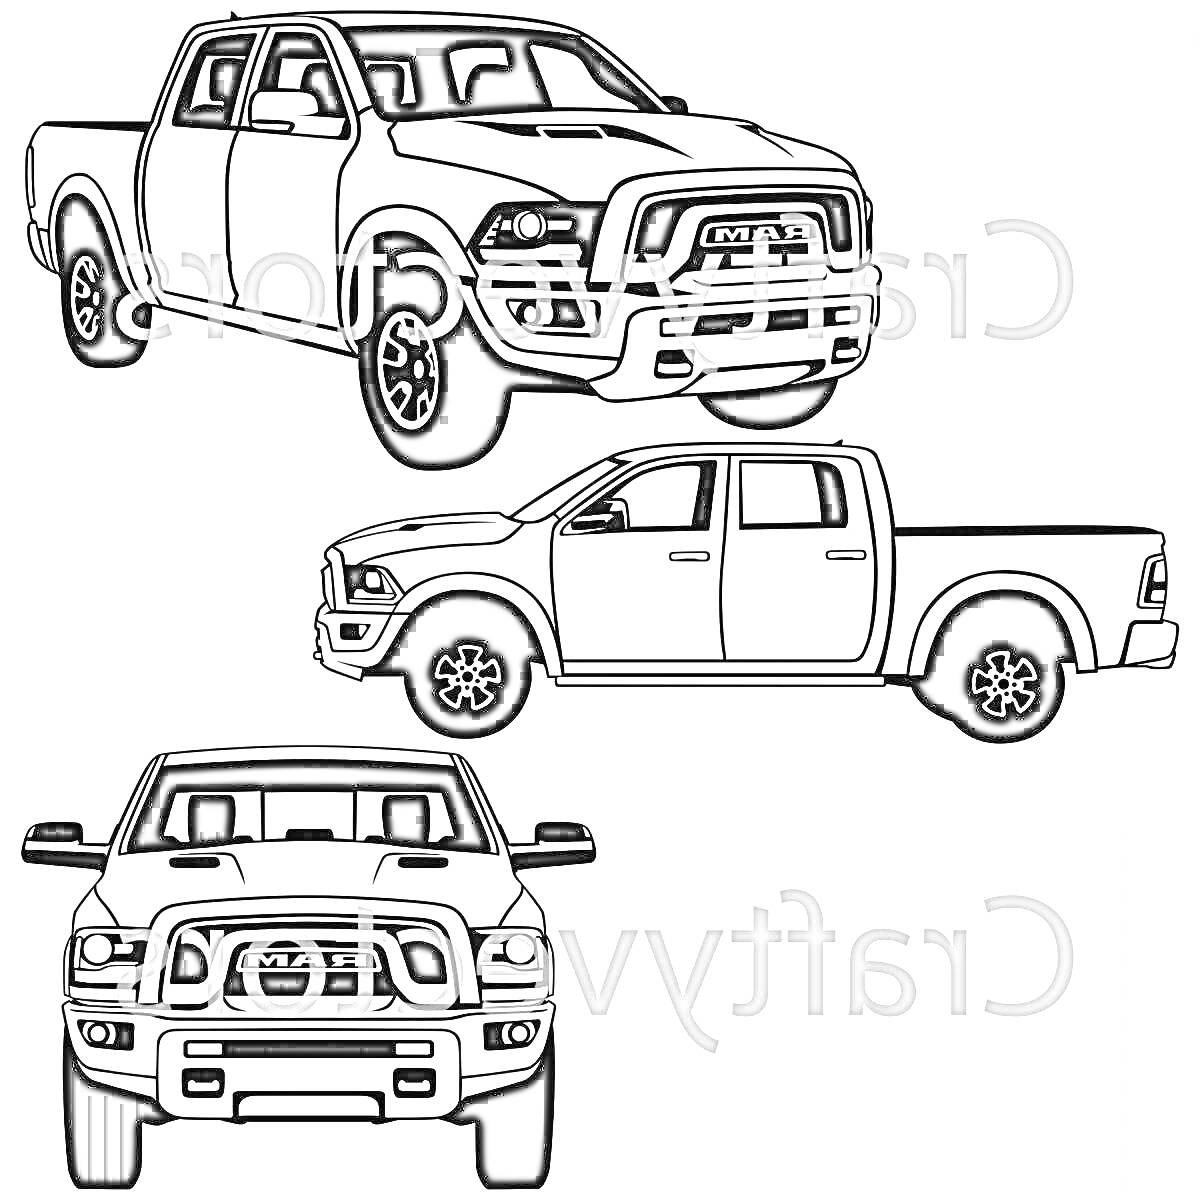 Раскраска Три ракурса внедорожника Dodge Ram: вид сбоку, спереди 3/4 и вид спереди